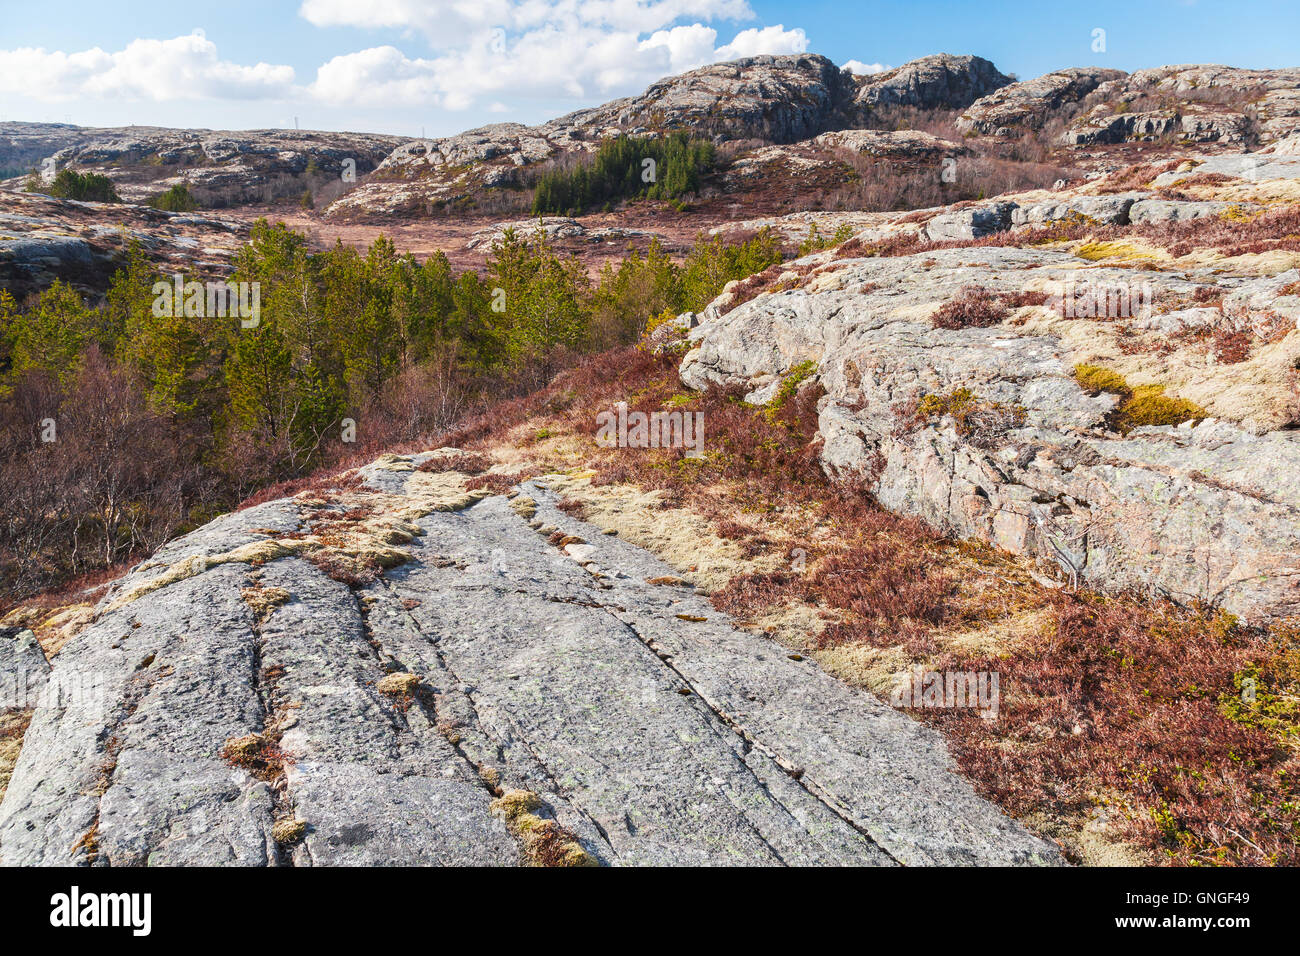 Le nord de la Norvège au printemps. Paysage de montagne avec des arbres poussant sur des rochers mousse rouge Banque D'Images